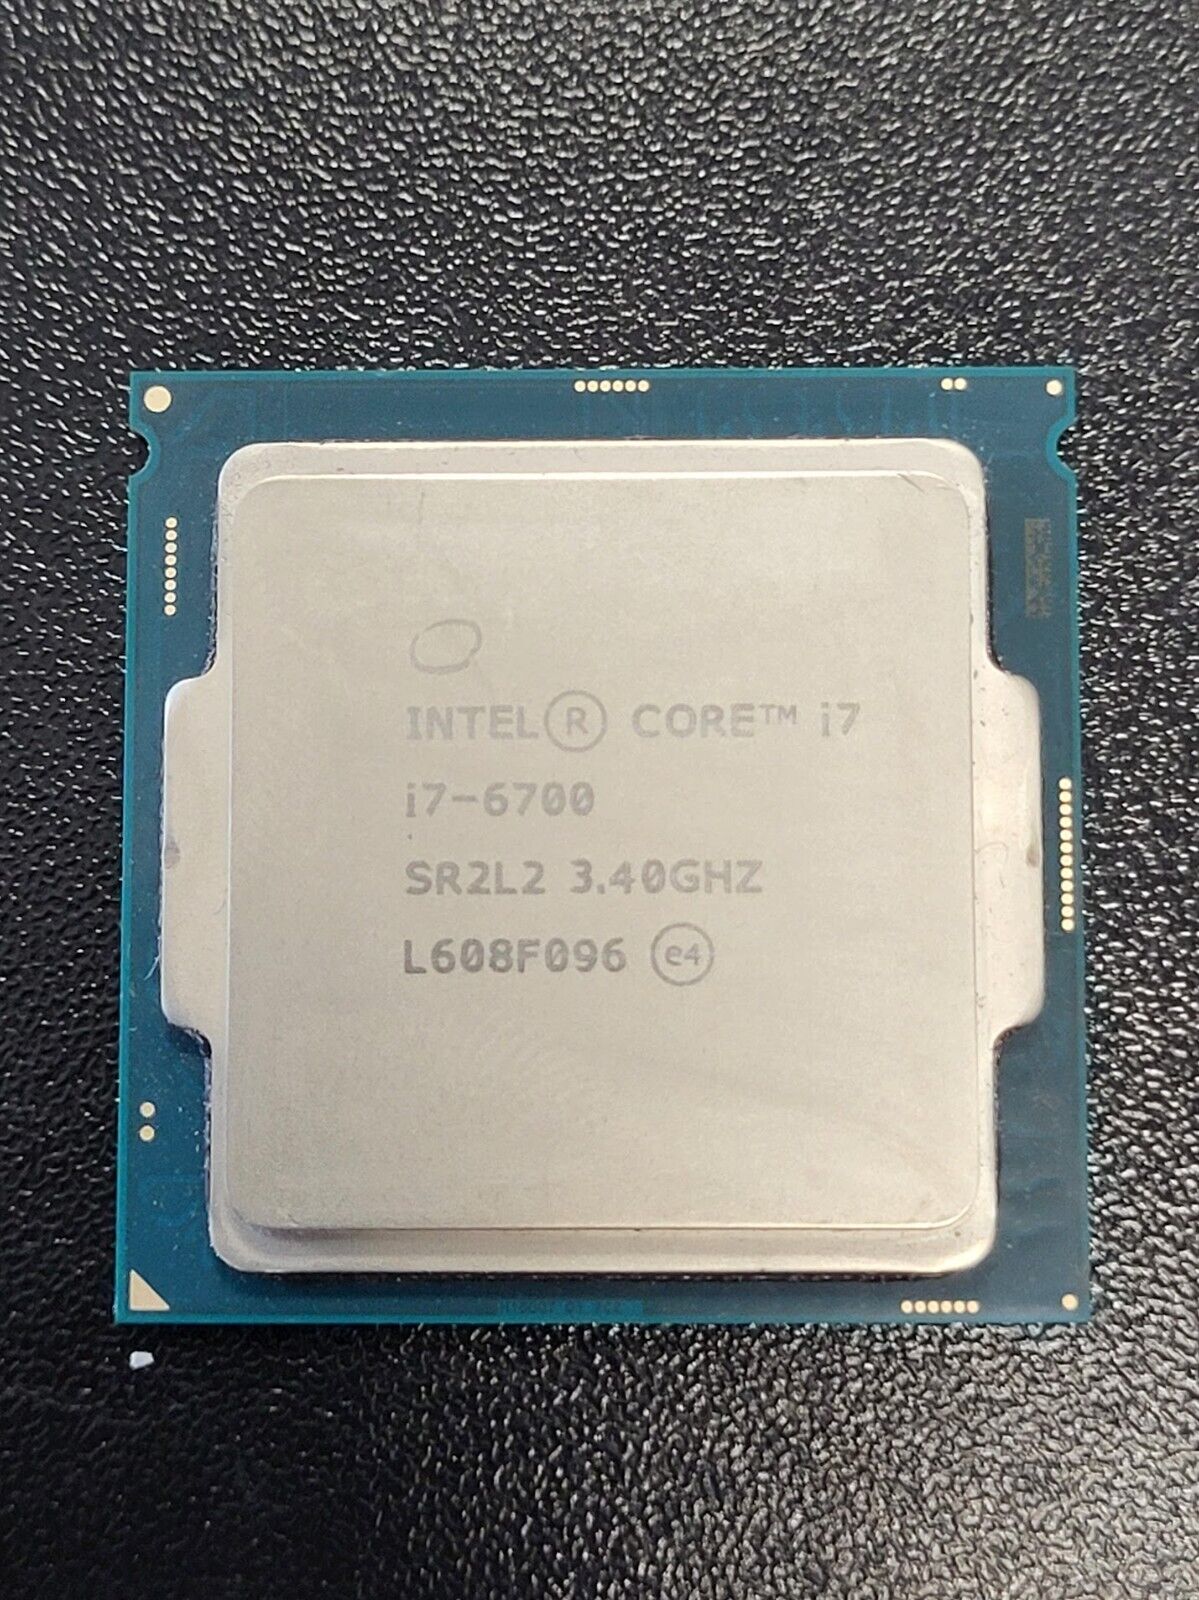 Intel Core i7-6700 Processor (3.40 GHz, 4 Cores, LGA 1151) - SR2L2 #73